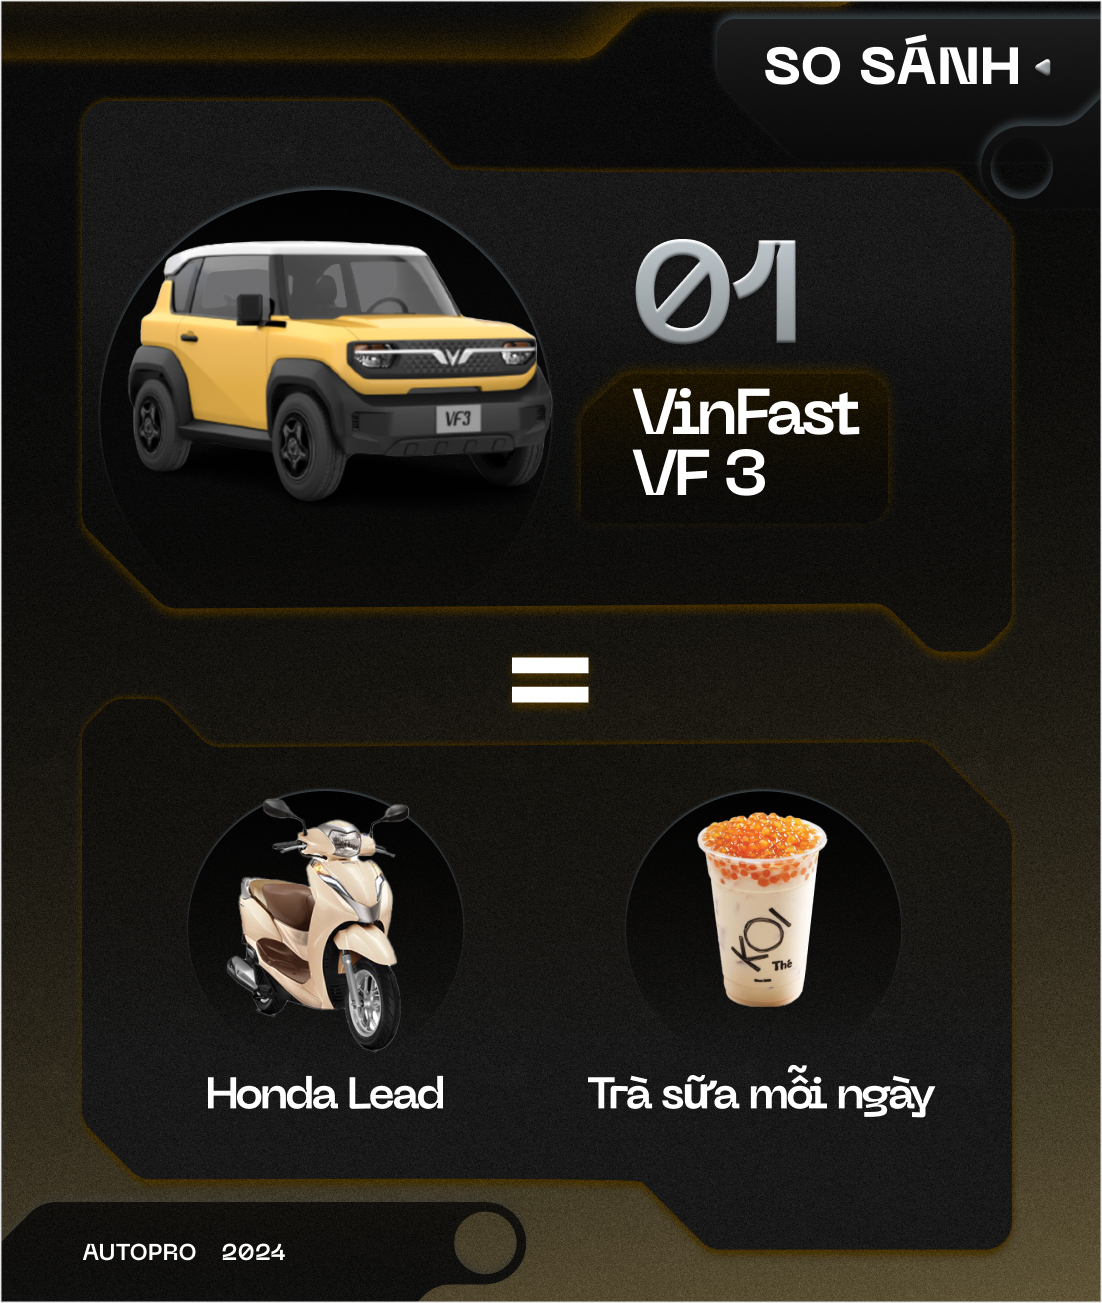 Nhịn uống trà sữa mỗi tháng, bạn có thể mua được VinFast VF 3  - Ảnh 1.